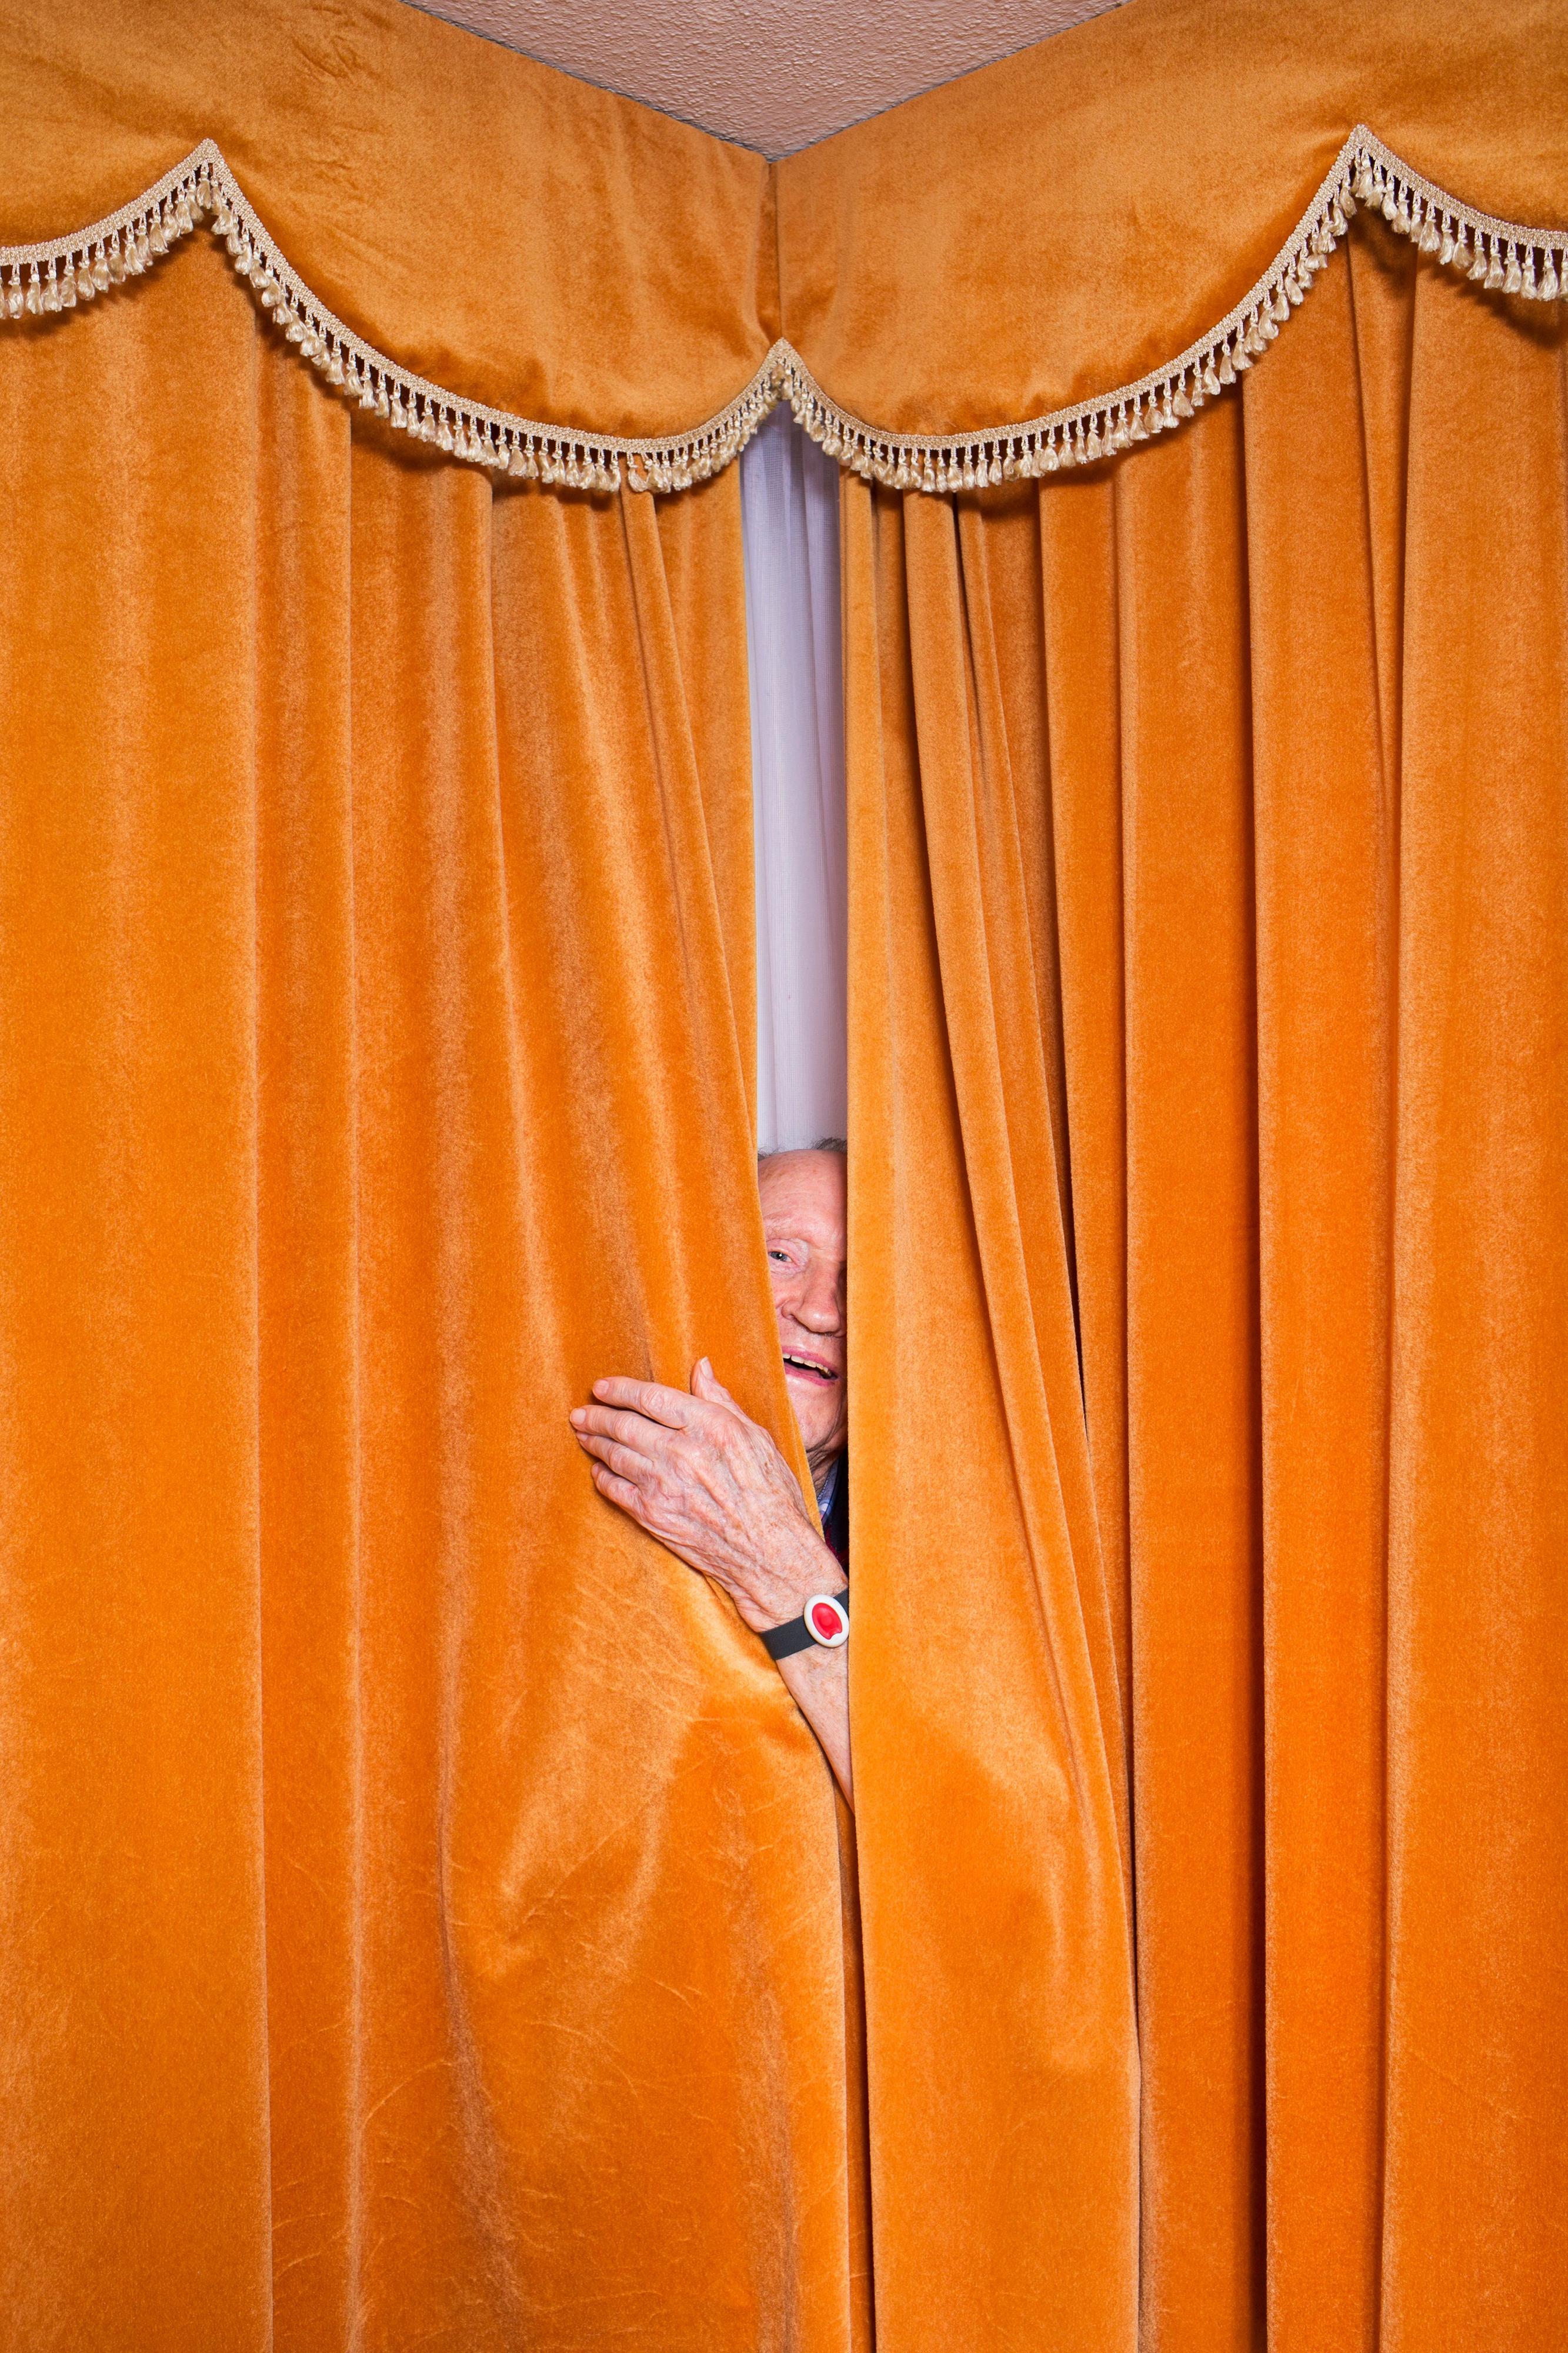 Ein älterer Mann schaut durch einen Schlitz in einem orangenen Vorhang.